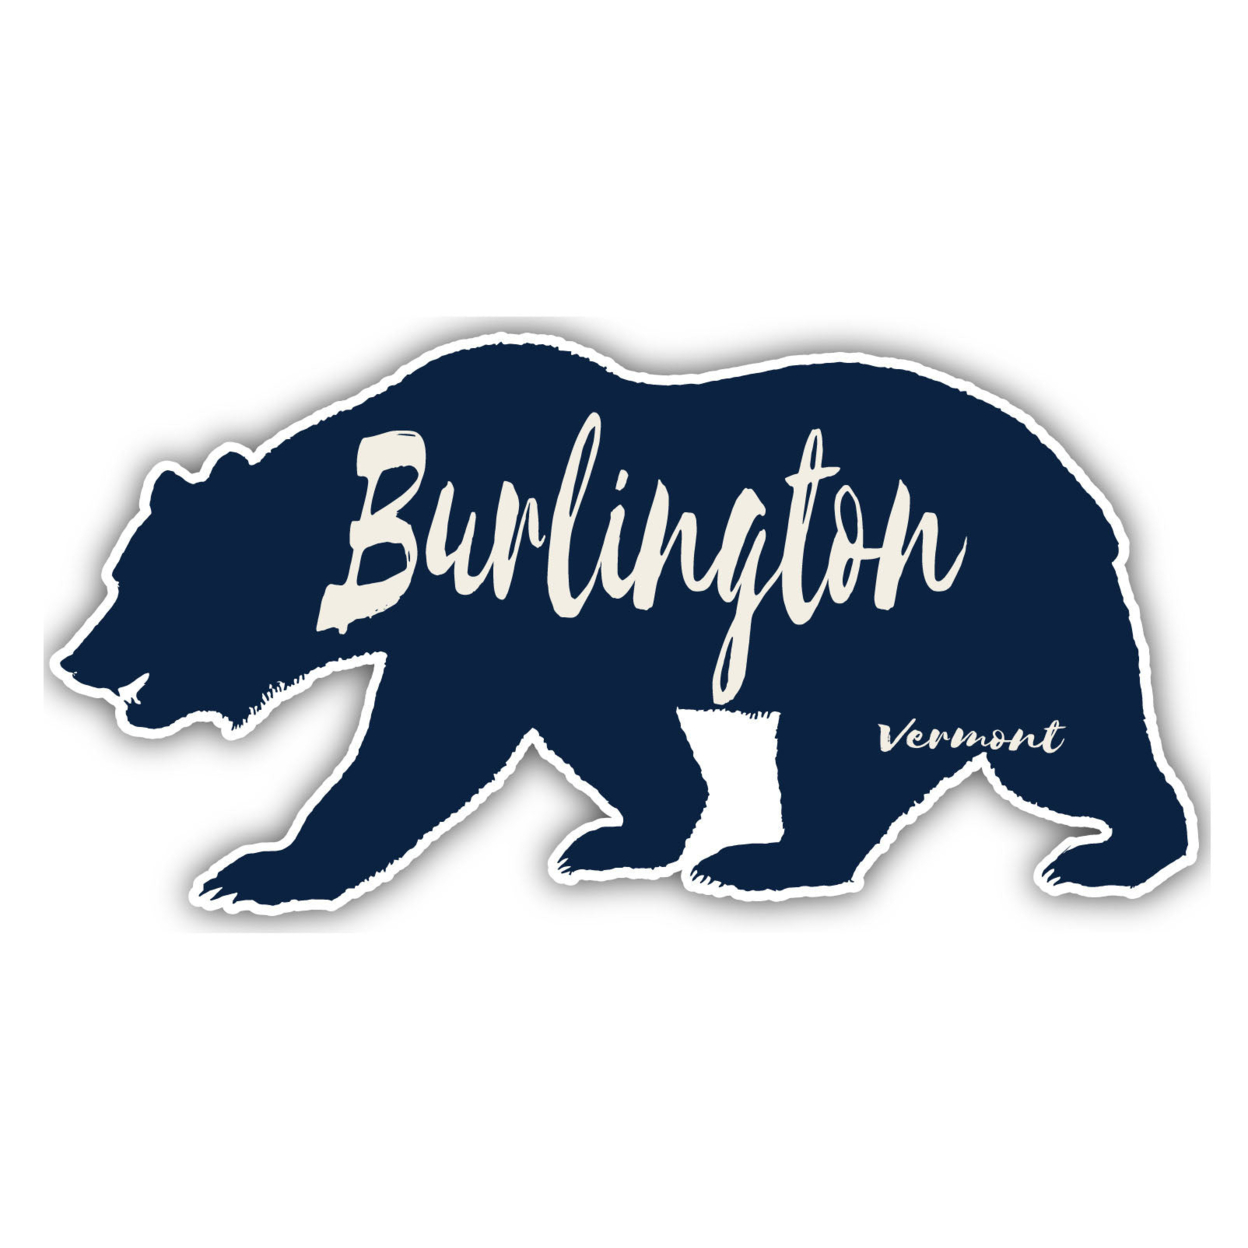 Burlington Vermont Souvenir Decorative Stickers (Choose Theme And Size) - 4-Pack, 10-Inch, Bear